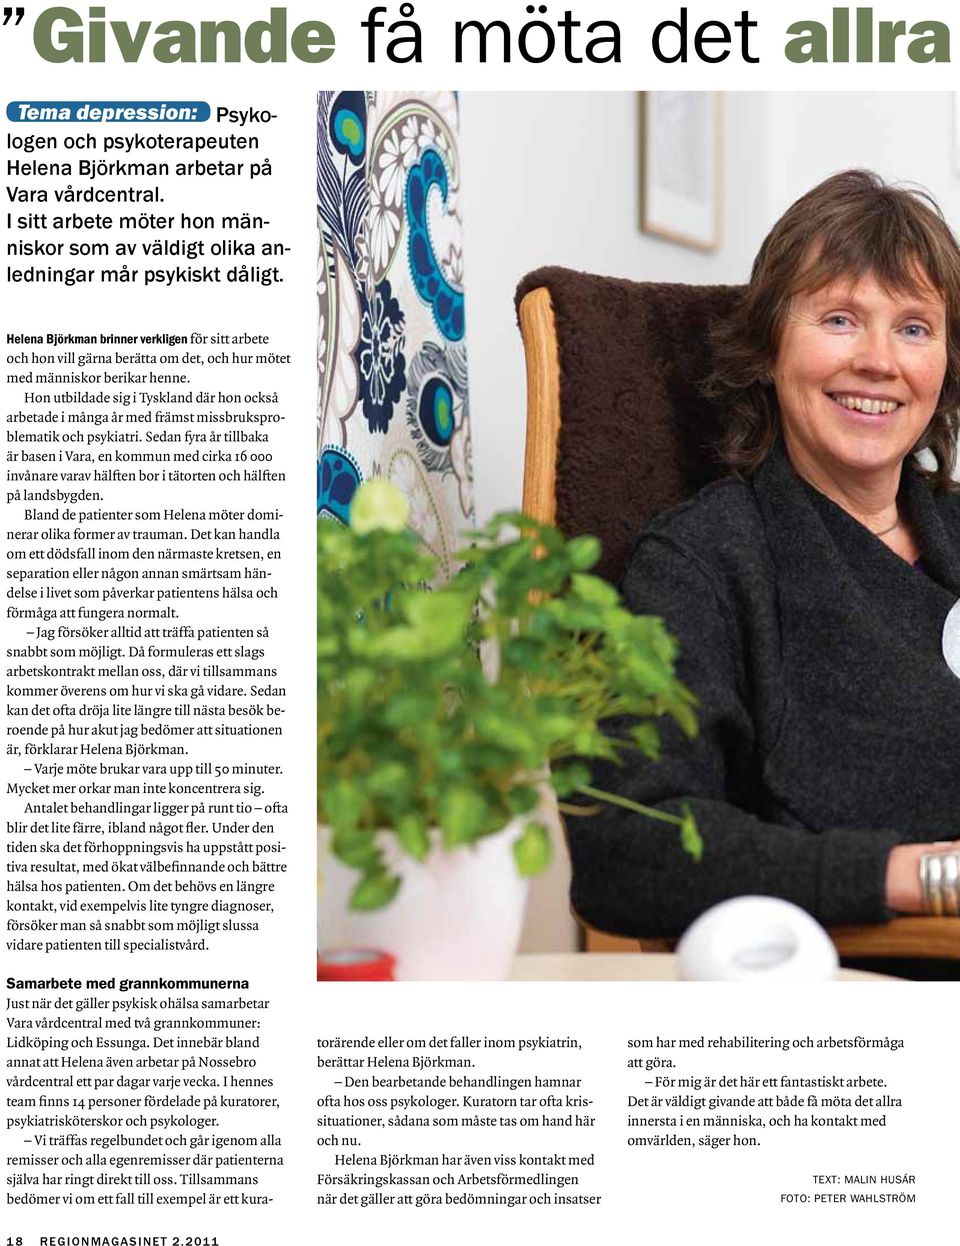 Helena Björkman brinner verkligen för sitt arbete och hon vill gärna berätta om det, och hur mötet med människor berikar henne.